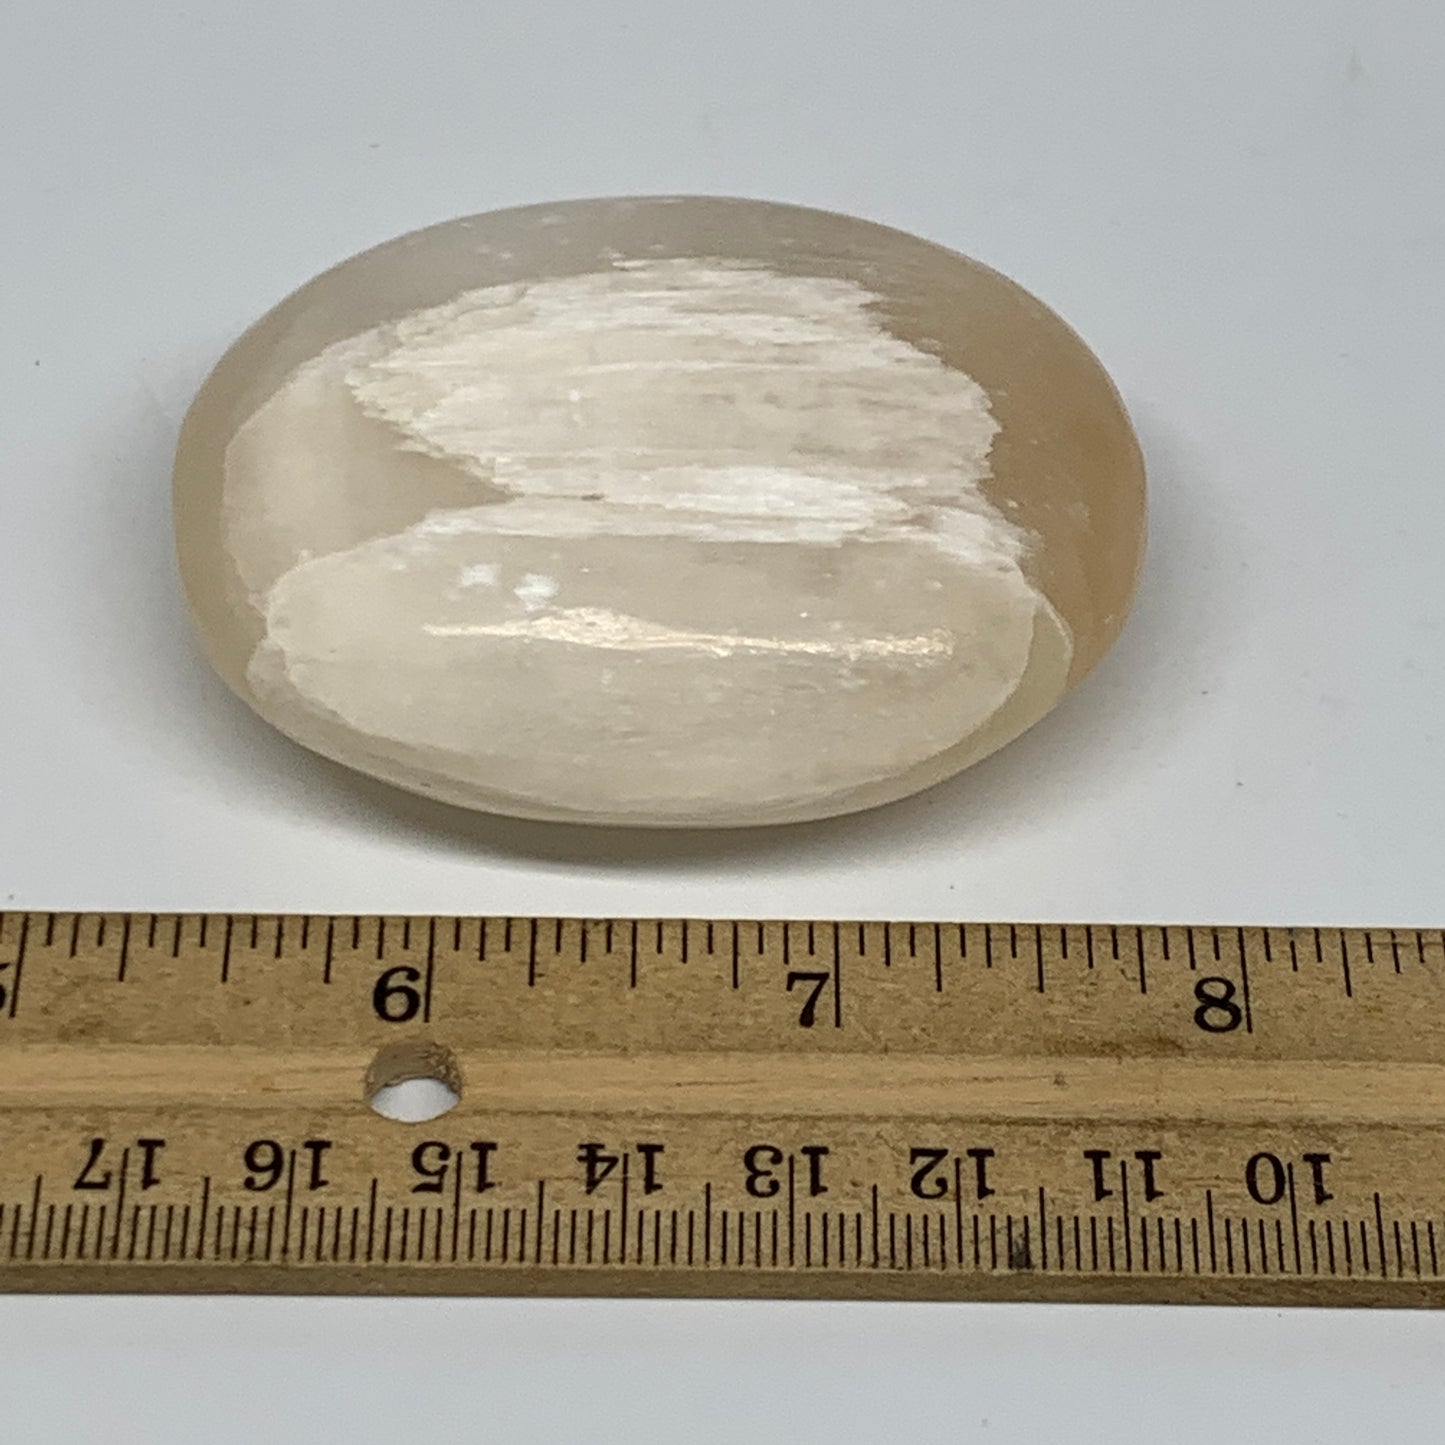 99g, 2.5"x2"x0.9", White Satin Spar (Selenite) Palmstone Crystal Gypsum, B22579